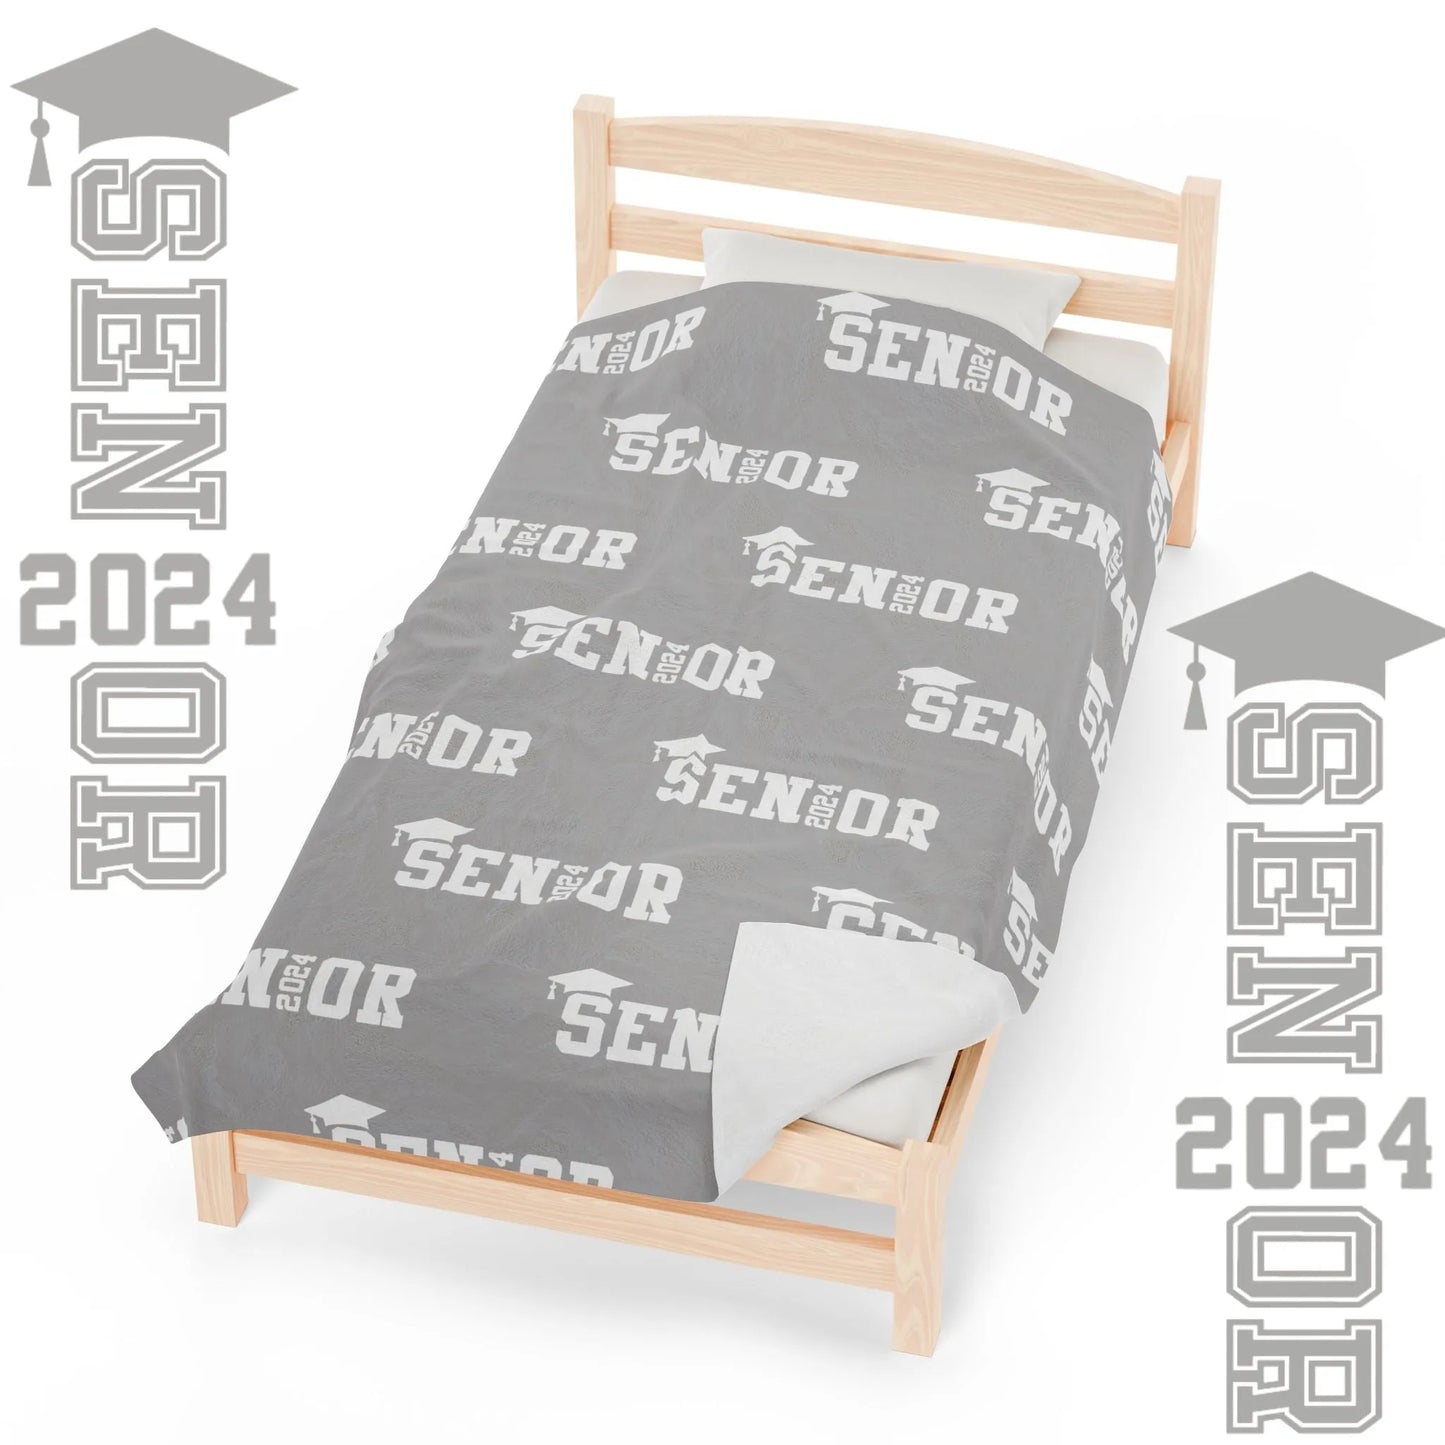 Class of 2024 Celebration Throw Blanket: Personalized, Cozy, and Stylish - Senior 2024 Personalized Throw Blanket Grey